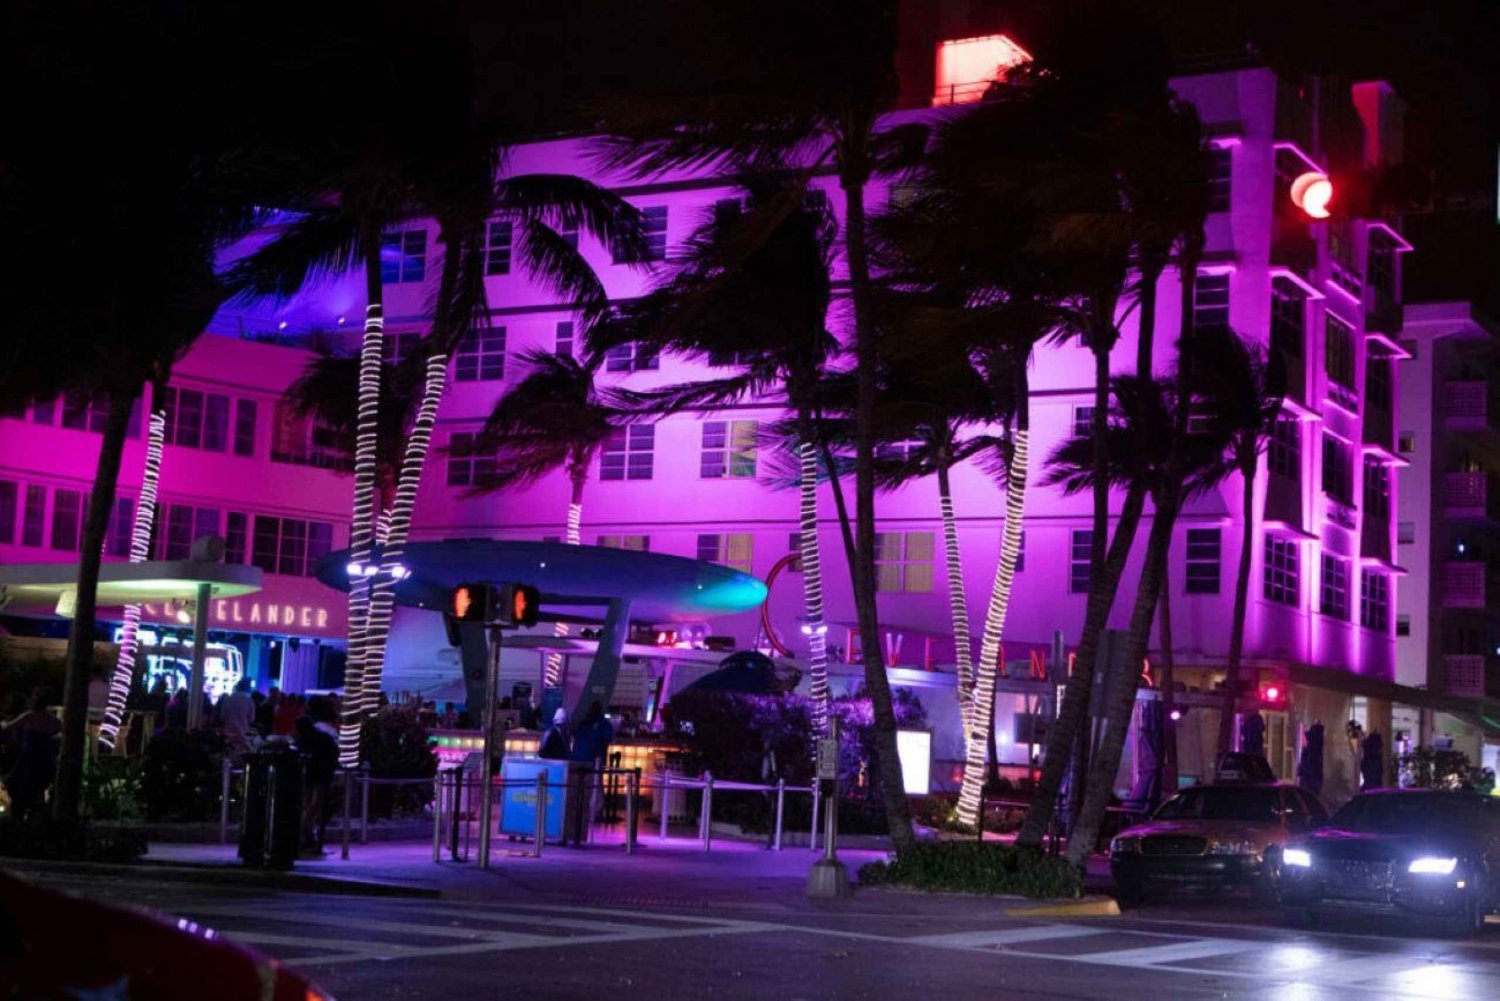 Miami : Party Sprinter - 4 heures de visite guidée de la ville